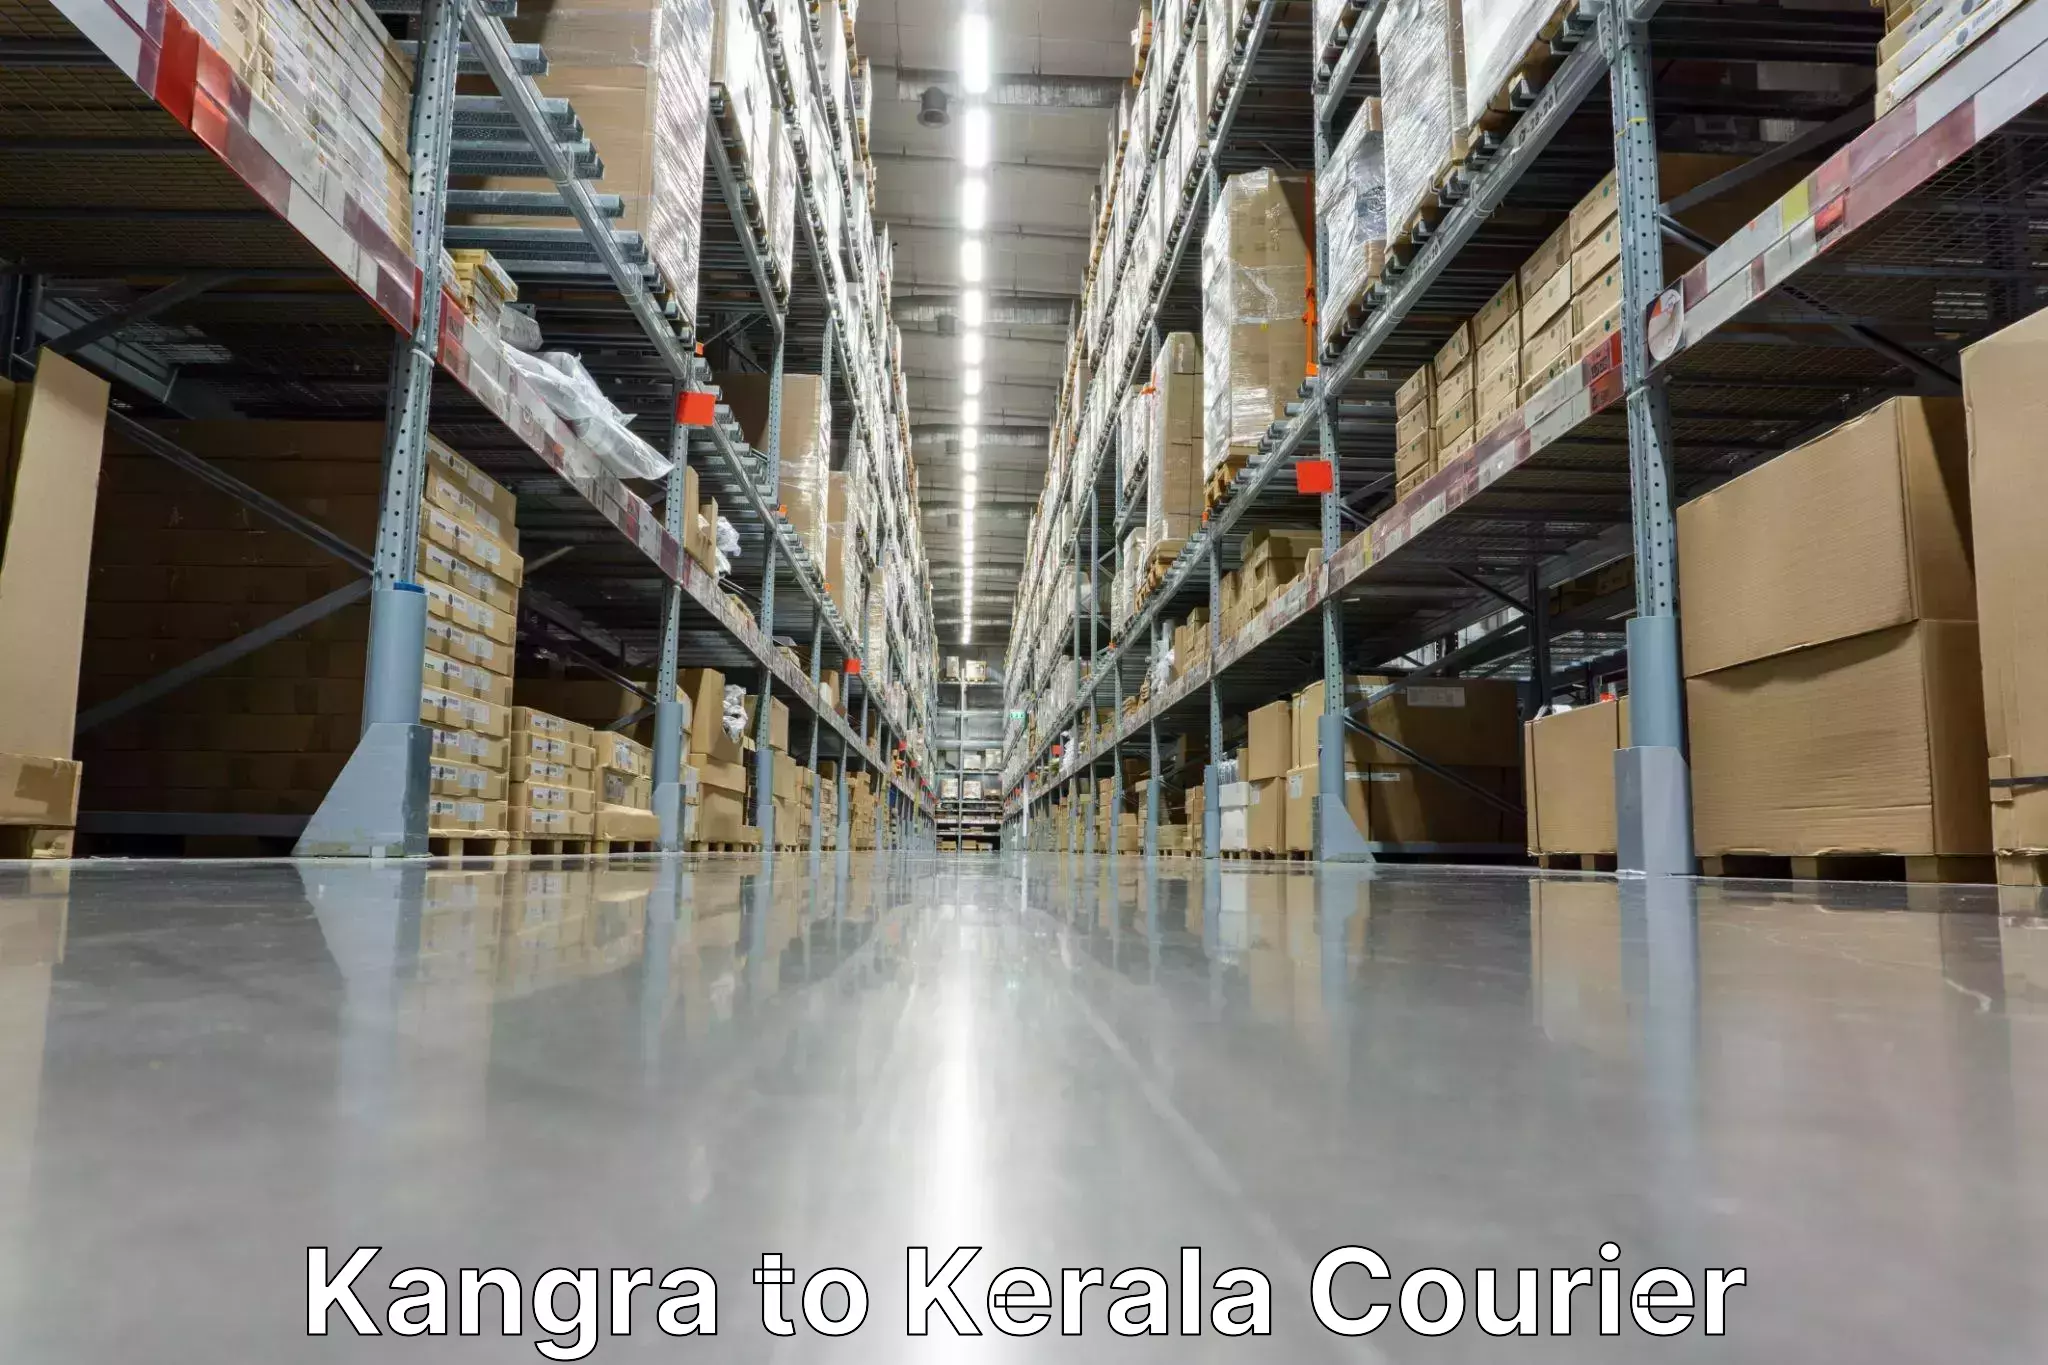 Digital courier platforms Kangra to Calicut